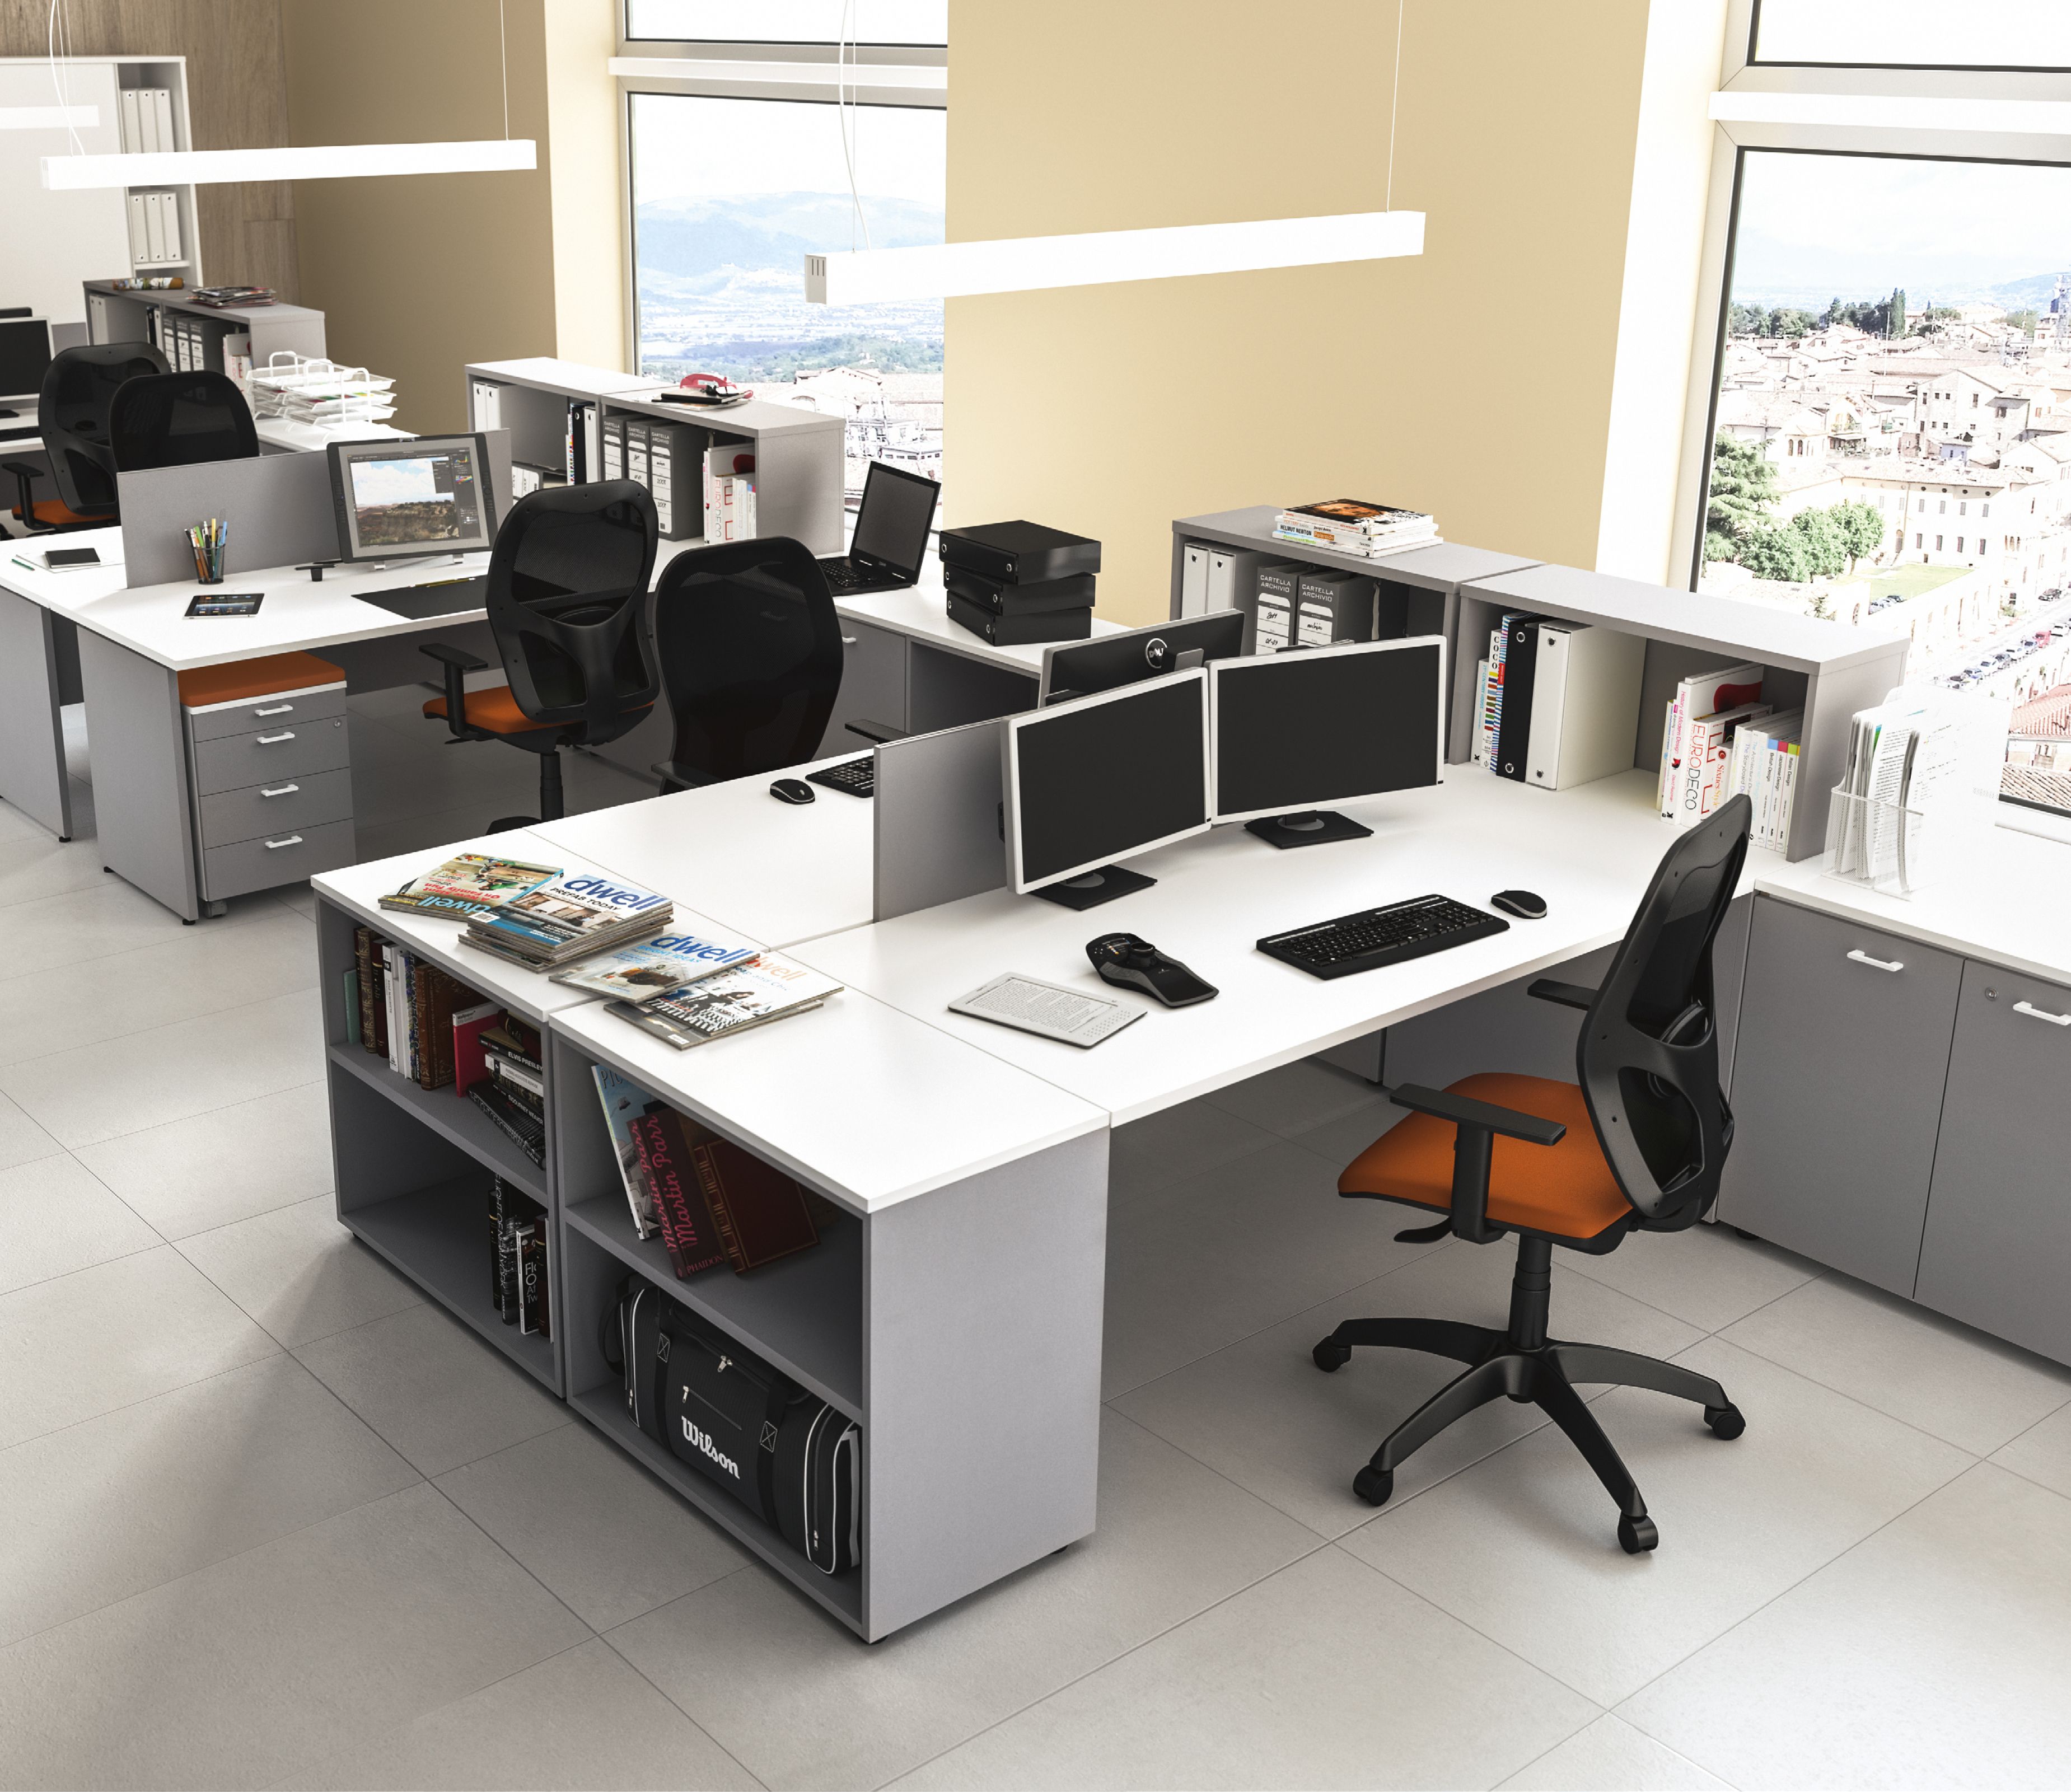 Офисная мебель - обзор вариантов дизайна мебели в офис (88 фото)